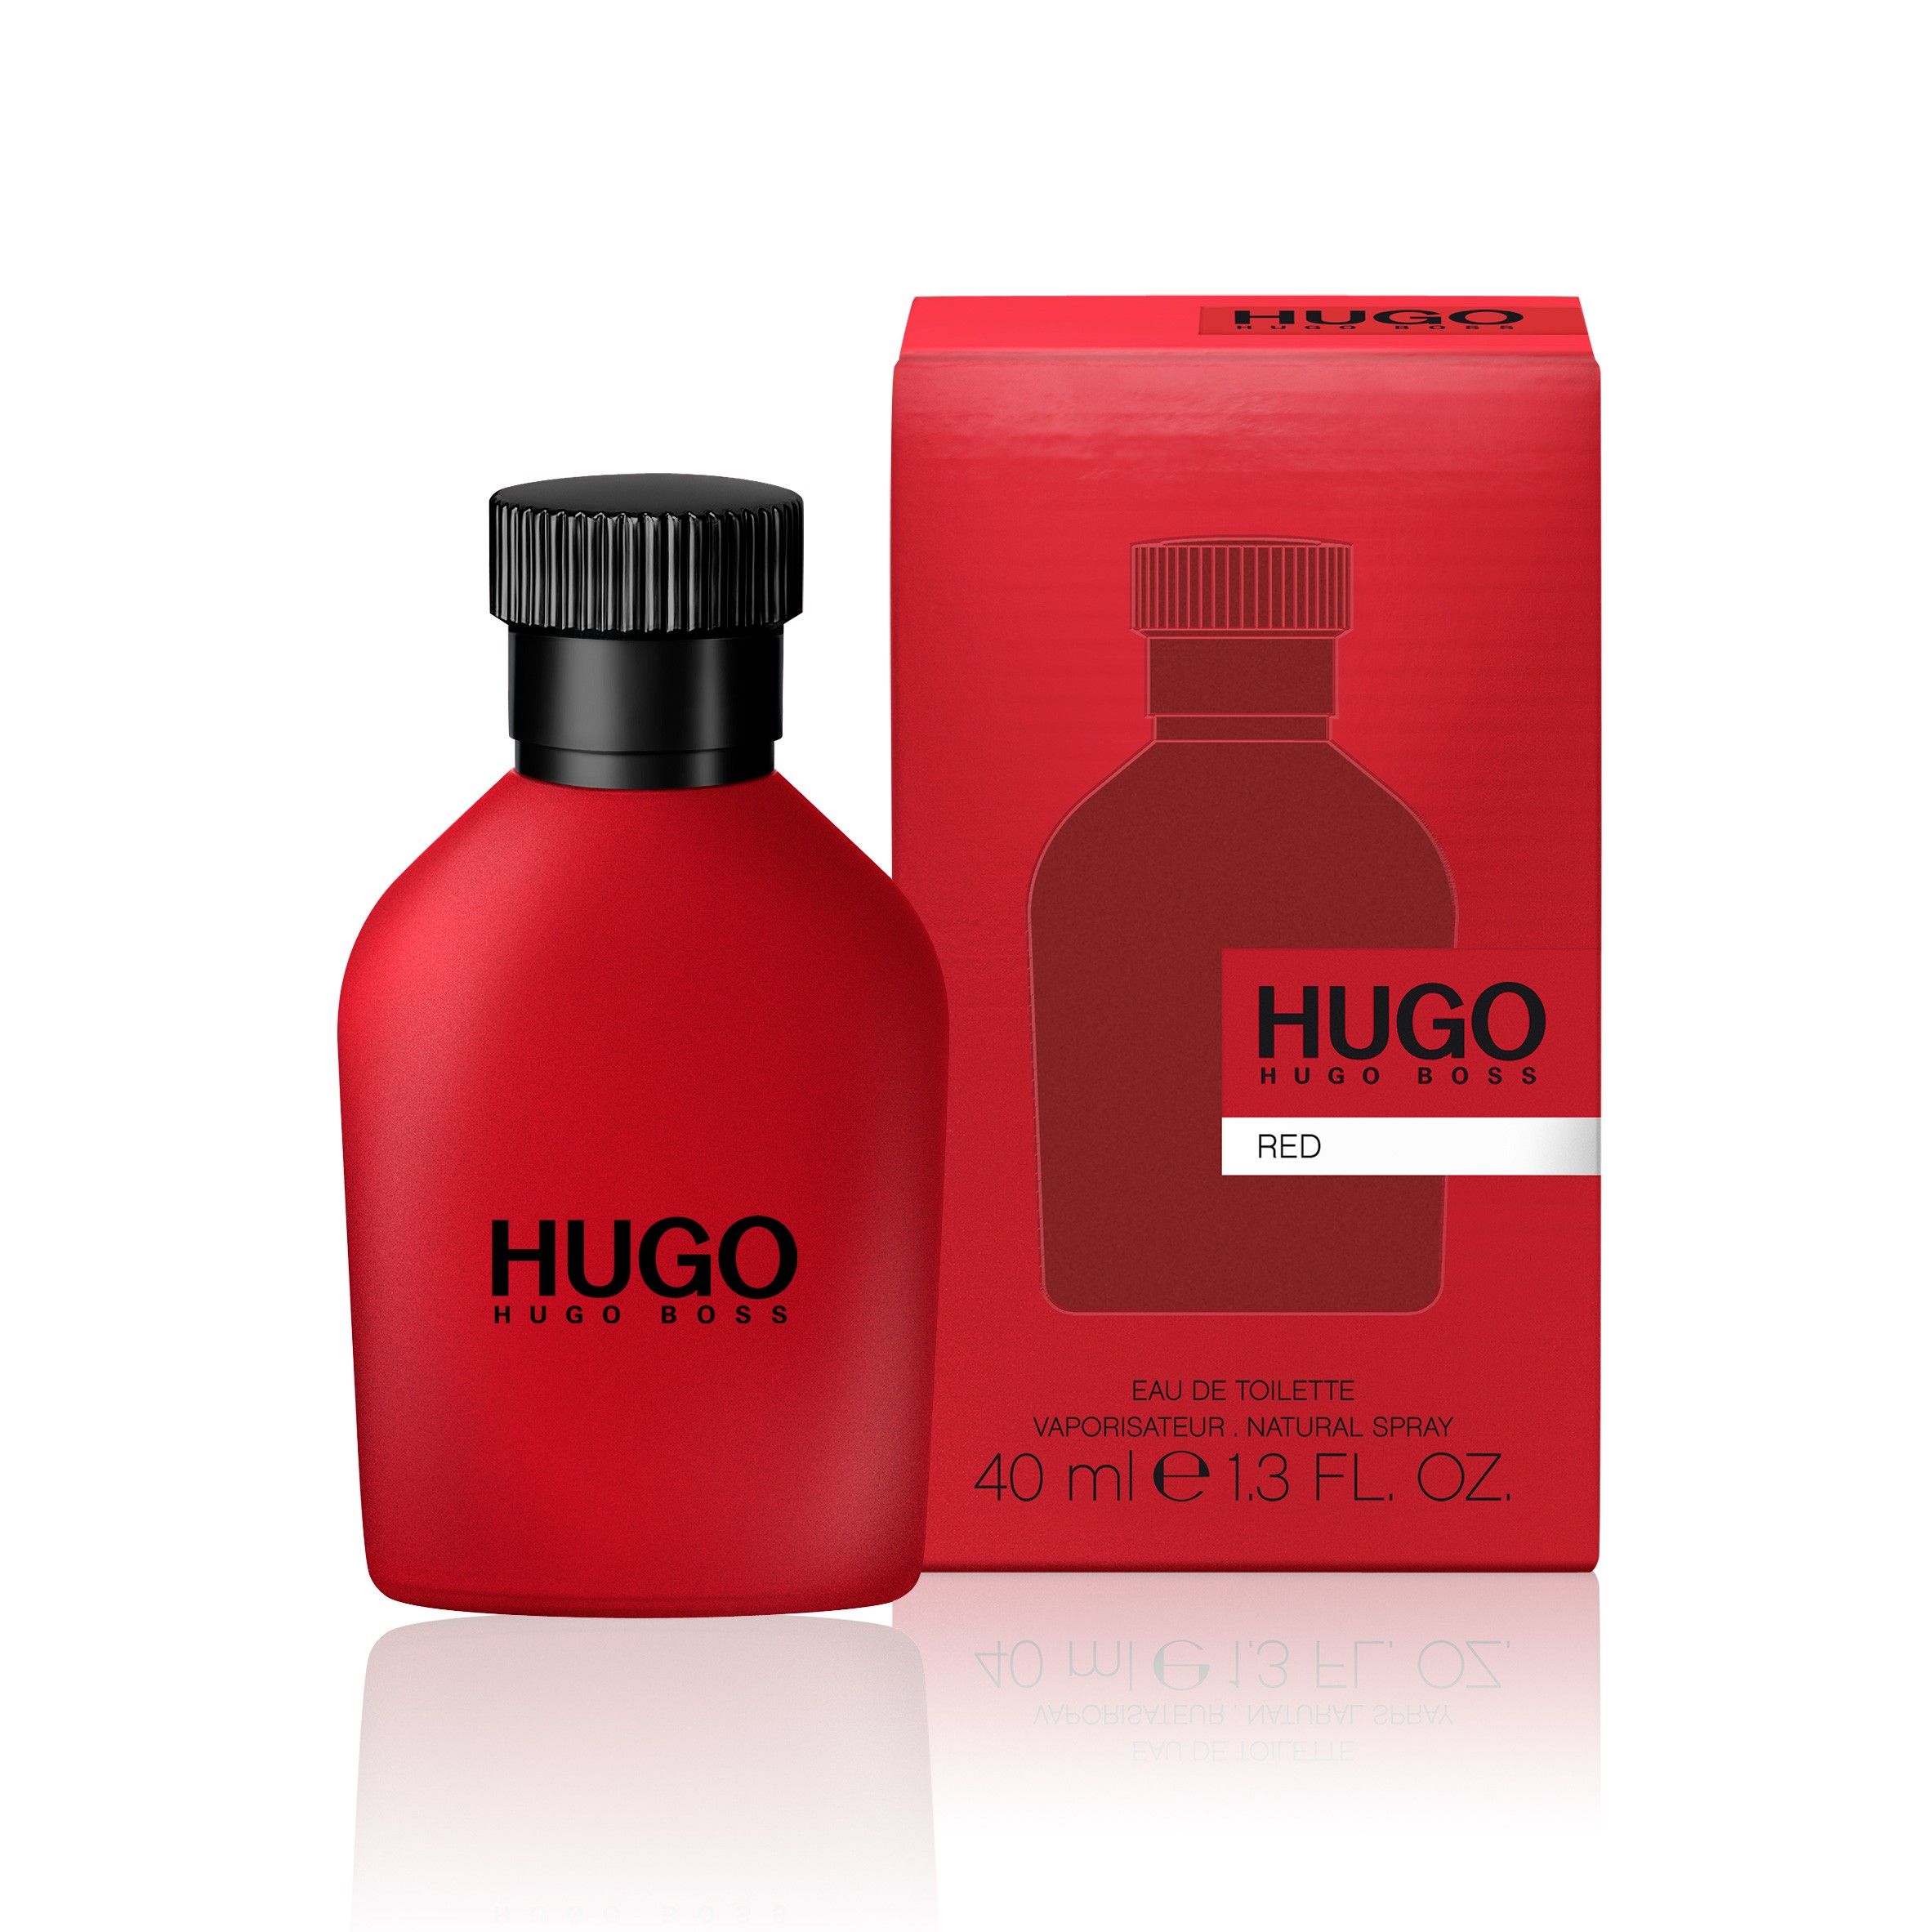 Hugo производитель. Hugo Boss "Hugo Red" EDT, 100ml. Hugo Boss Red, EDT., 150 ml. Hugo Boss Red EDT Хьюго босс ред туалетная вода 150 ml. Hugo Boss мужской Hugo туалетная вода (EDT) 40мл.